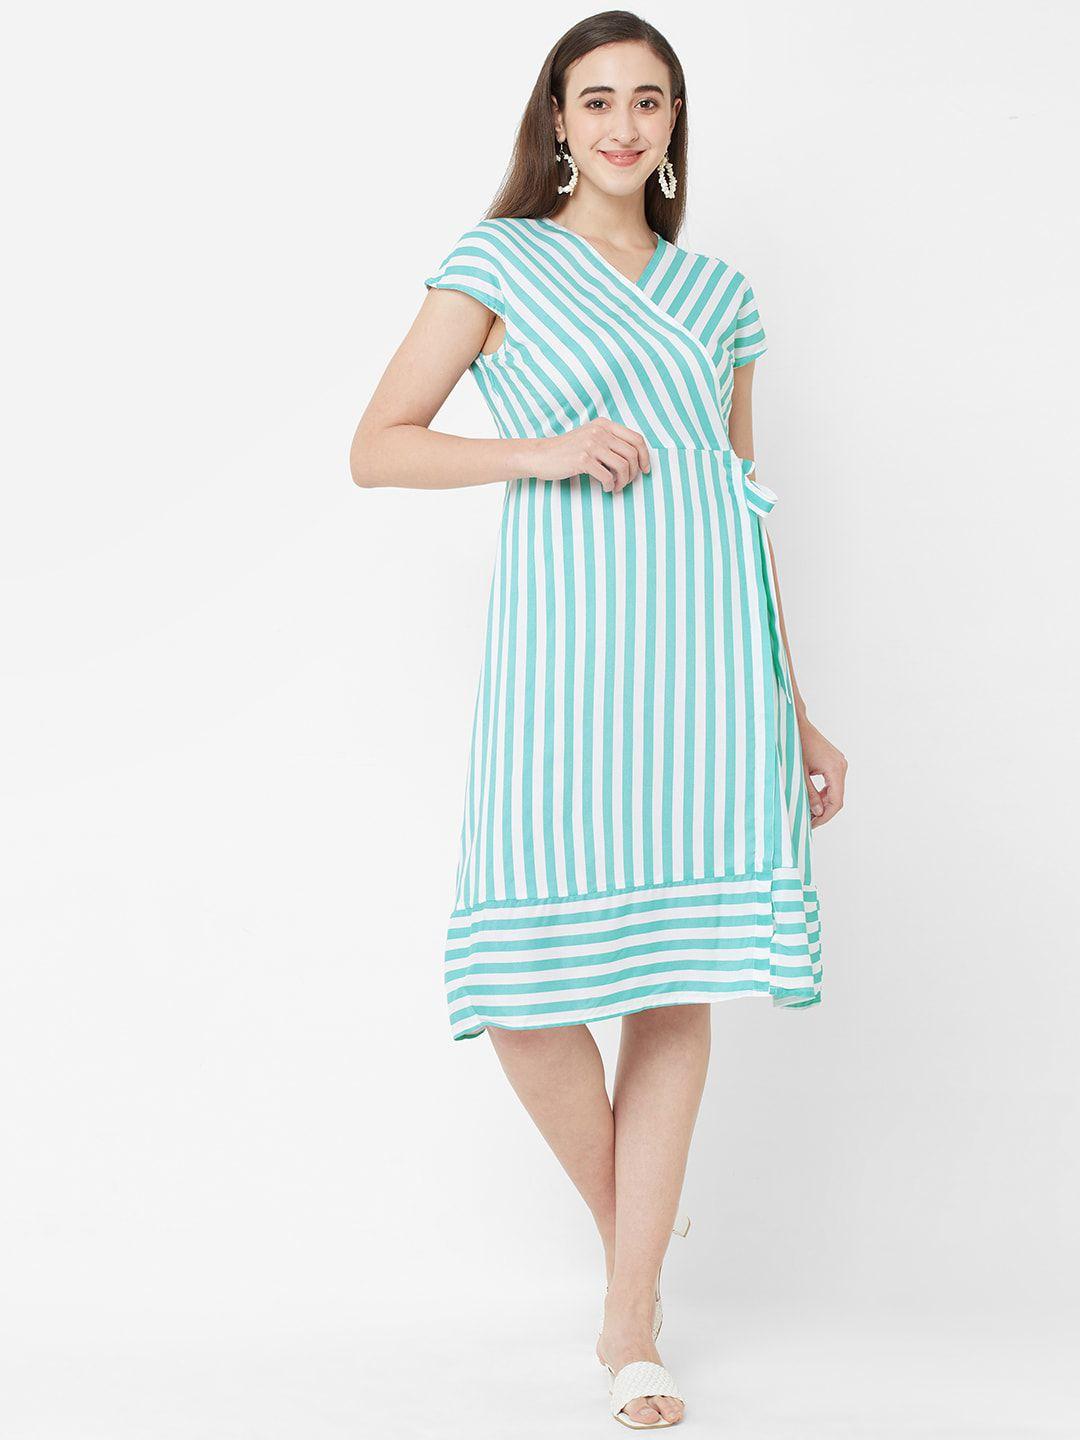 109f green striped dress